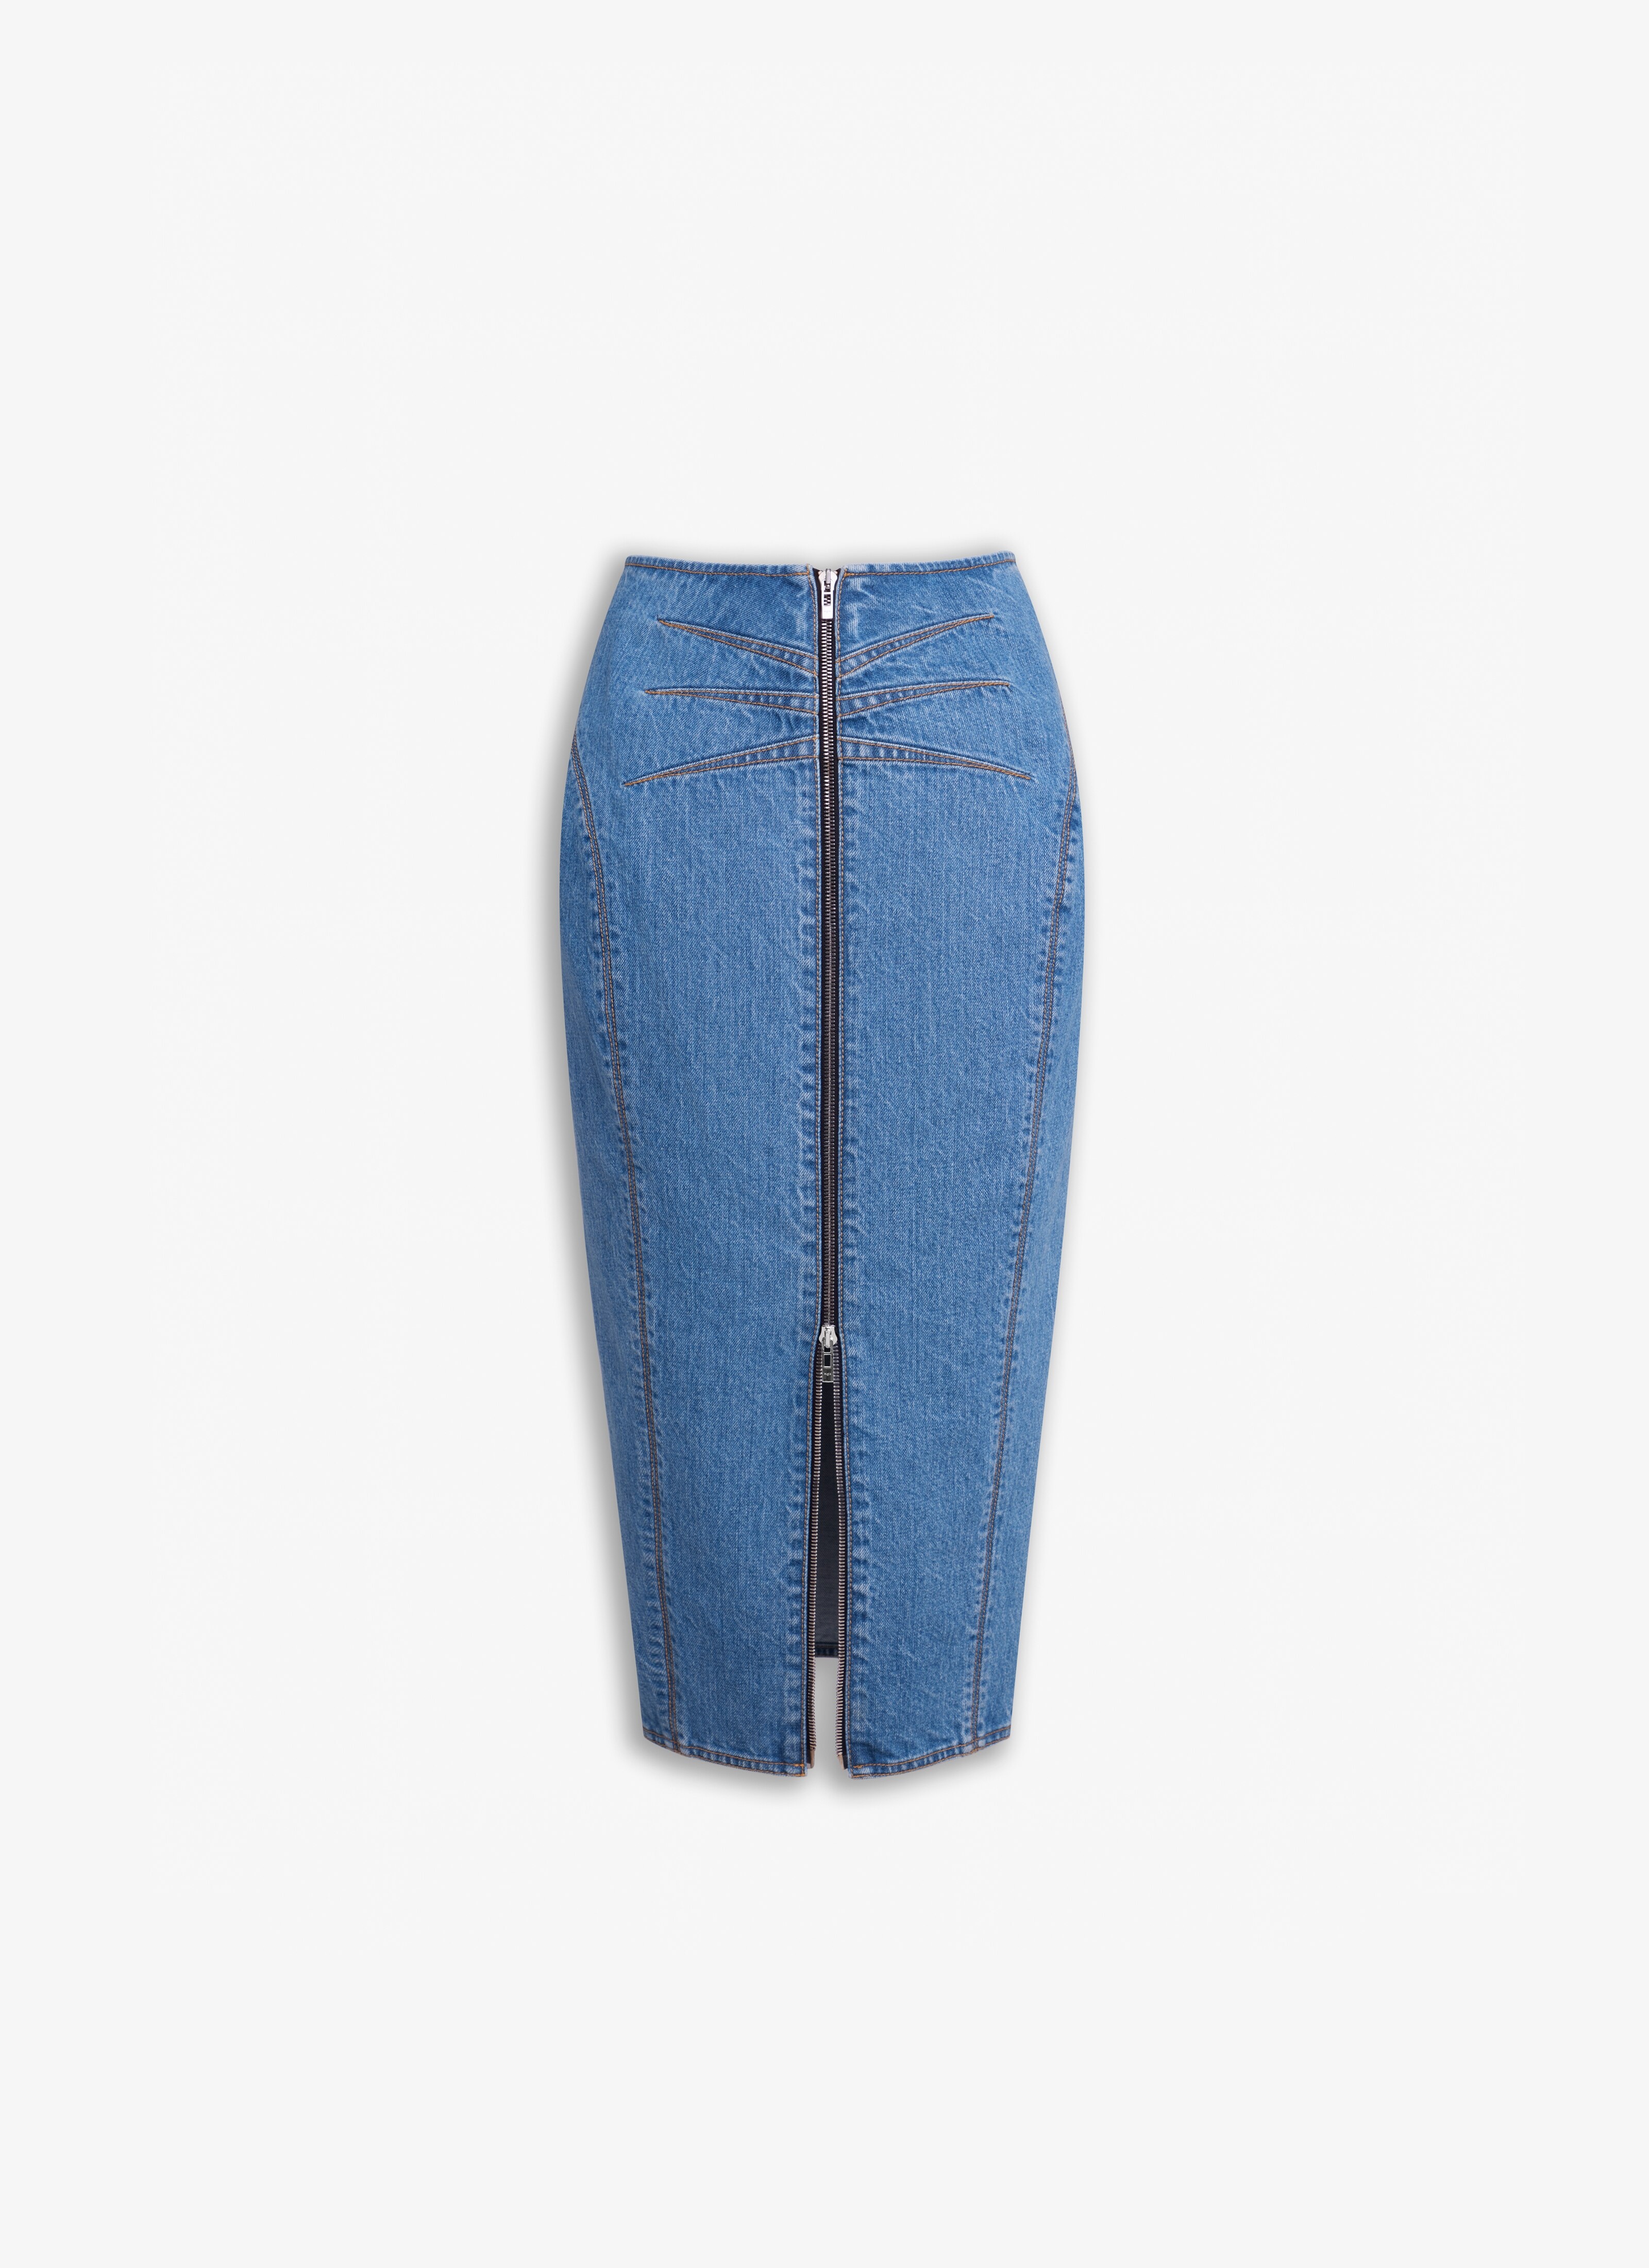 Denim pencil skirt in blue - Alaia